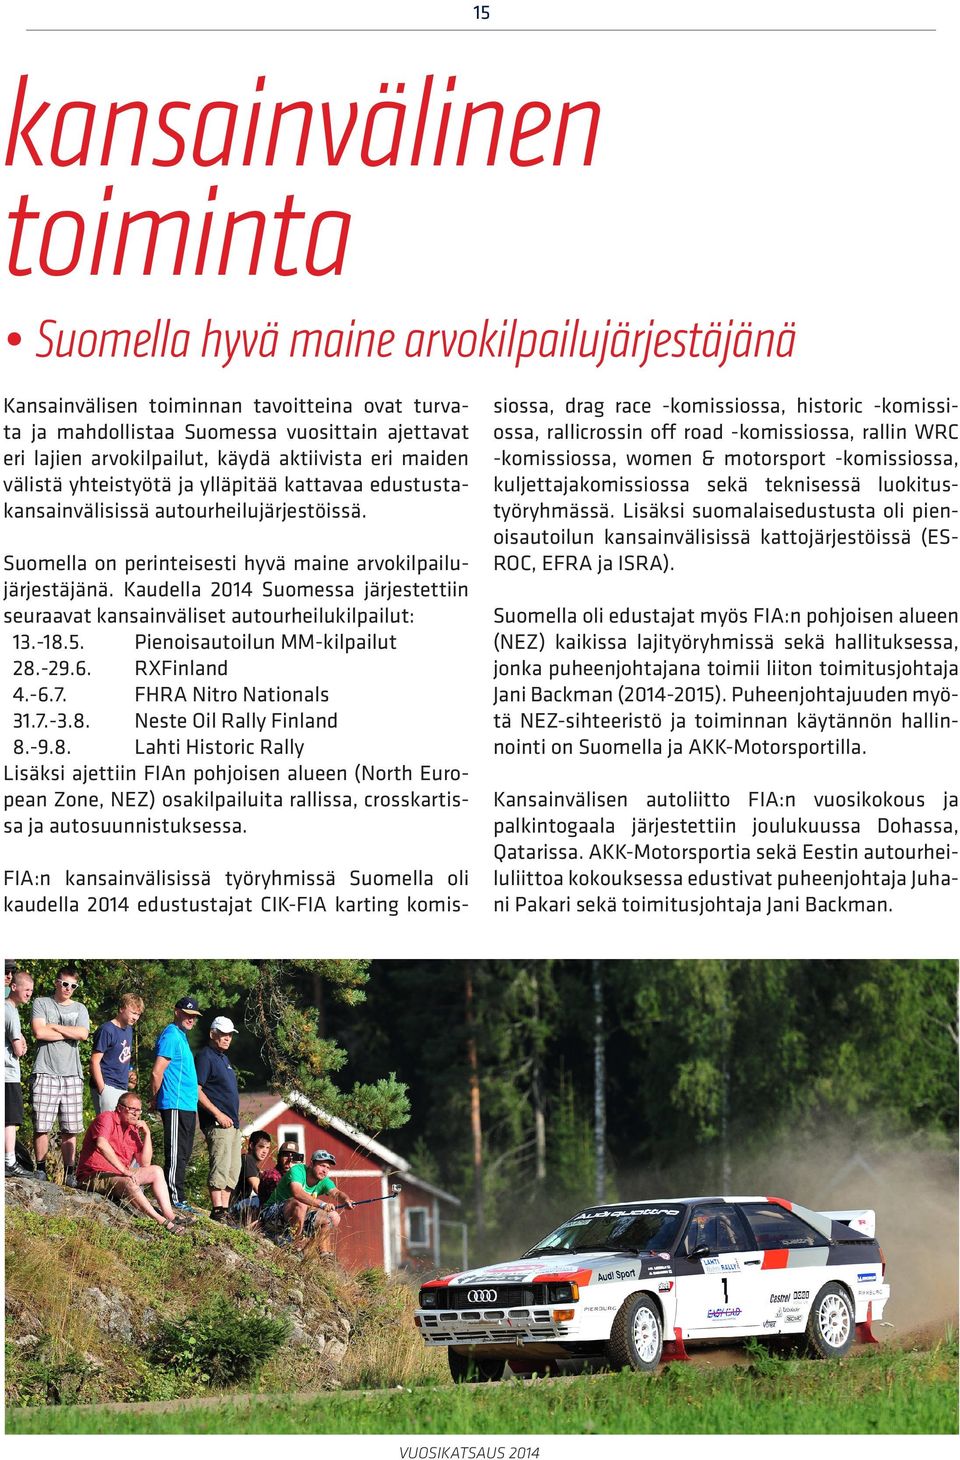 Kaudella 2014 Suomessa järjestettiin seuraavat kansainväliset autourheilukilpailut: 13.-18.5. Pienoisautoilun MM-kilpailut 28.-29.6. RXFinland 4.-6.7. FHRA Nitro Nationals 31.7.-3.8. Neste Oil Rally Finland 8.